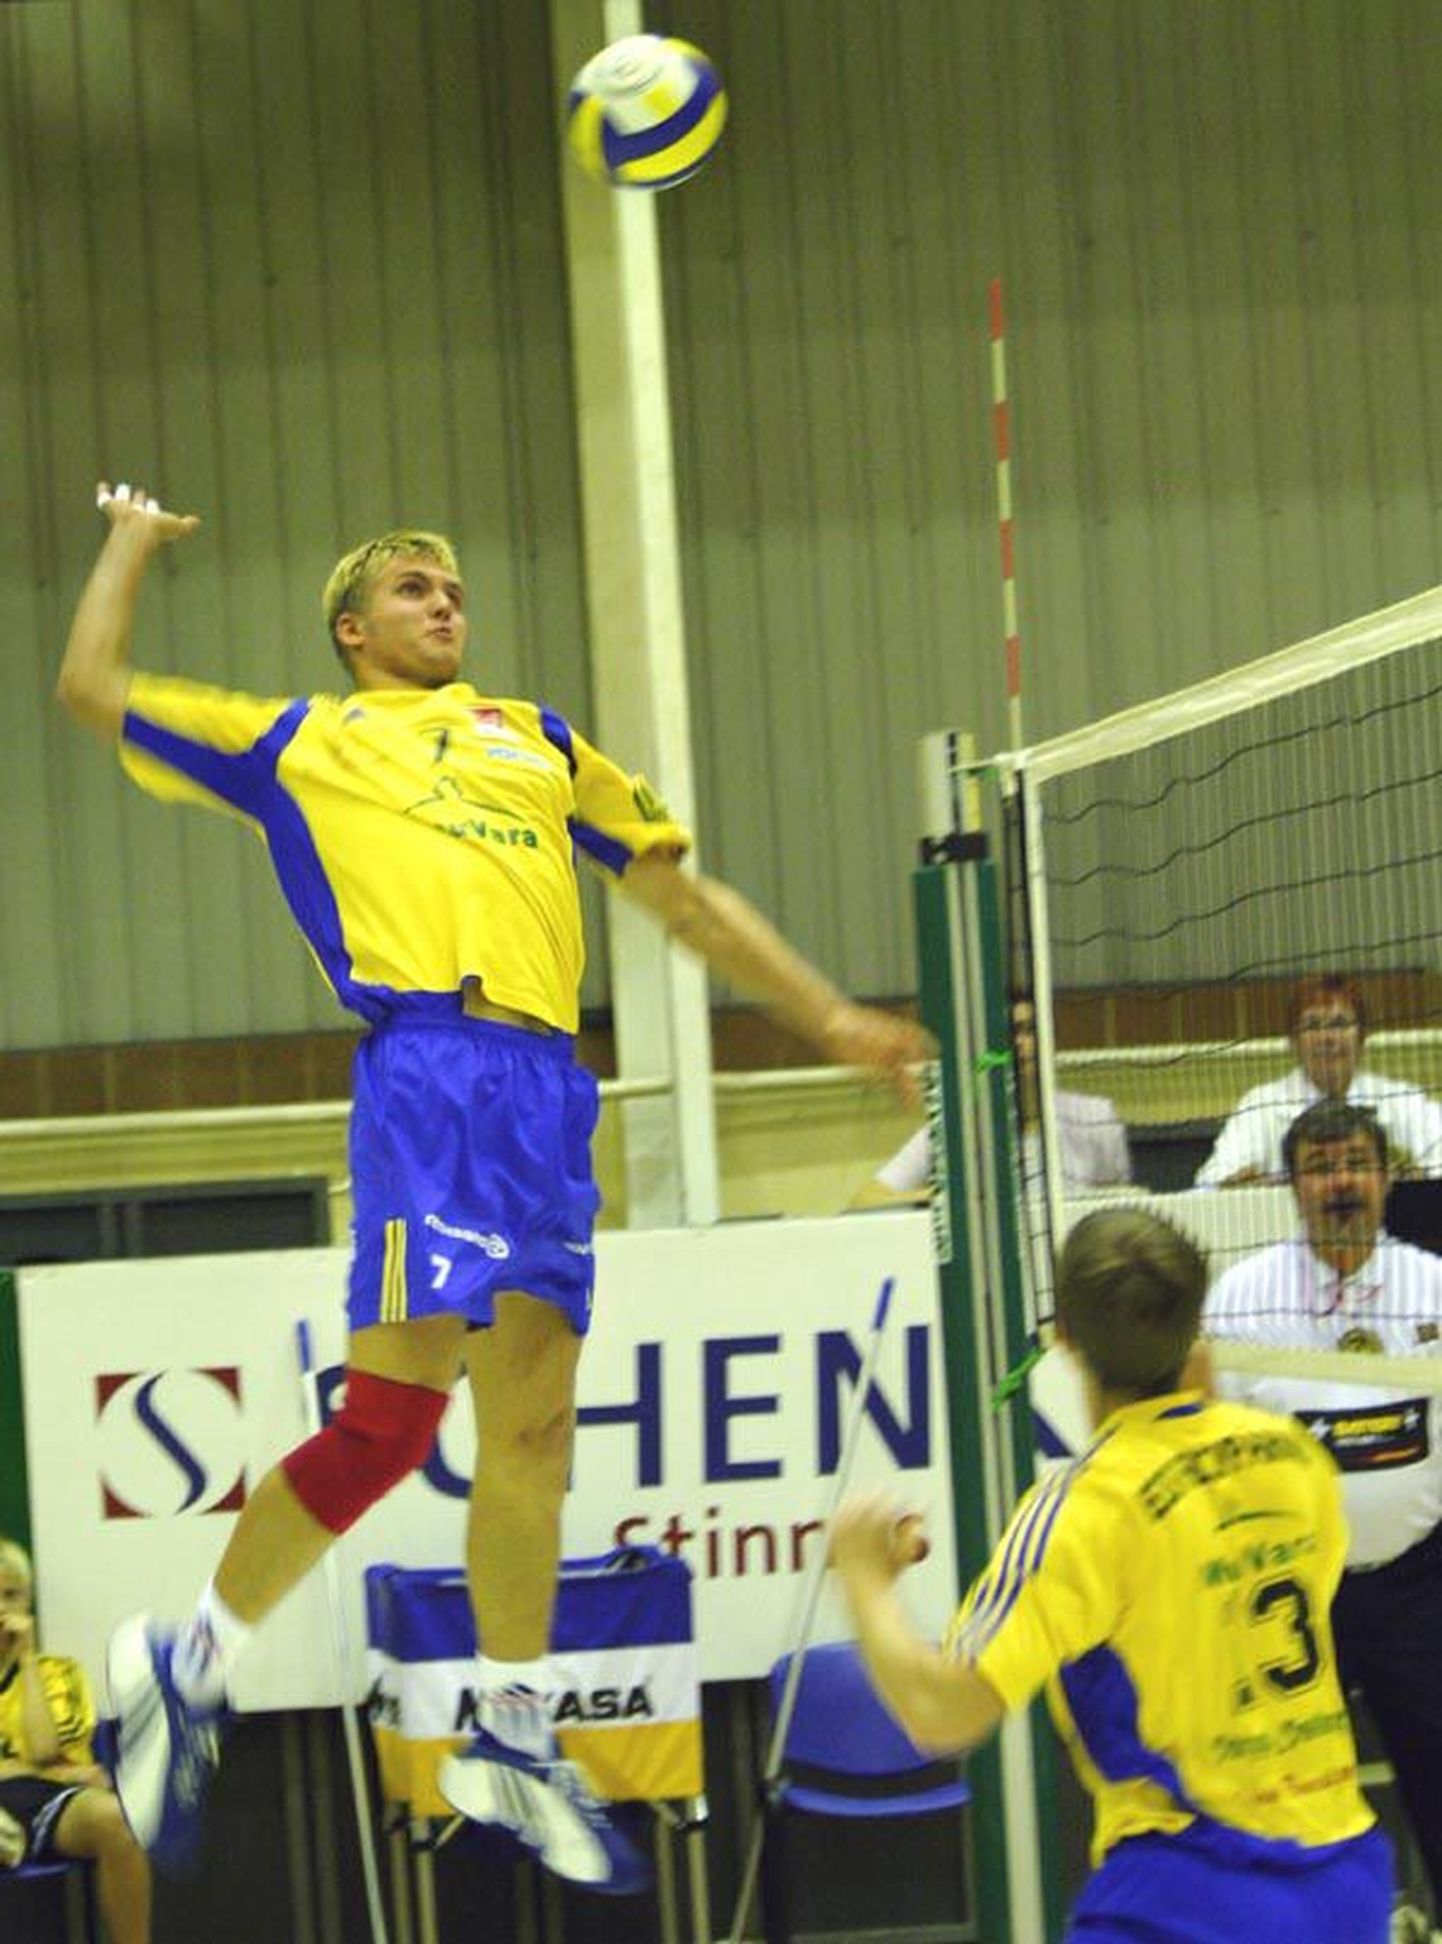 Eesti meistriliiga ja vähese eurosarjagi kogemusega Meris Merisaar on Pärnu meeskonna üks juhtmängijaid.